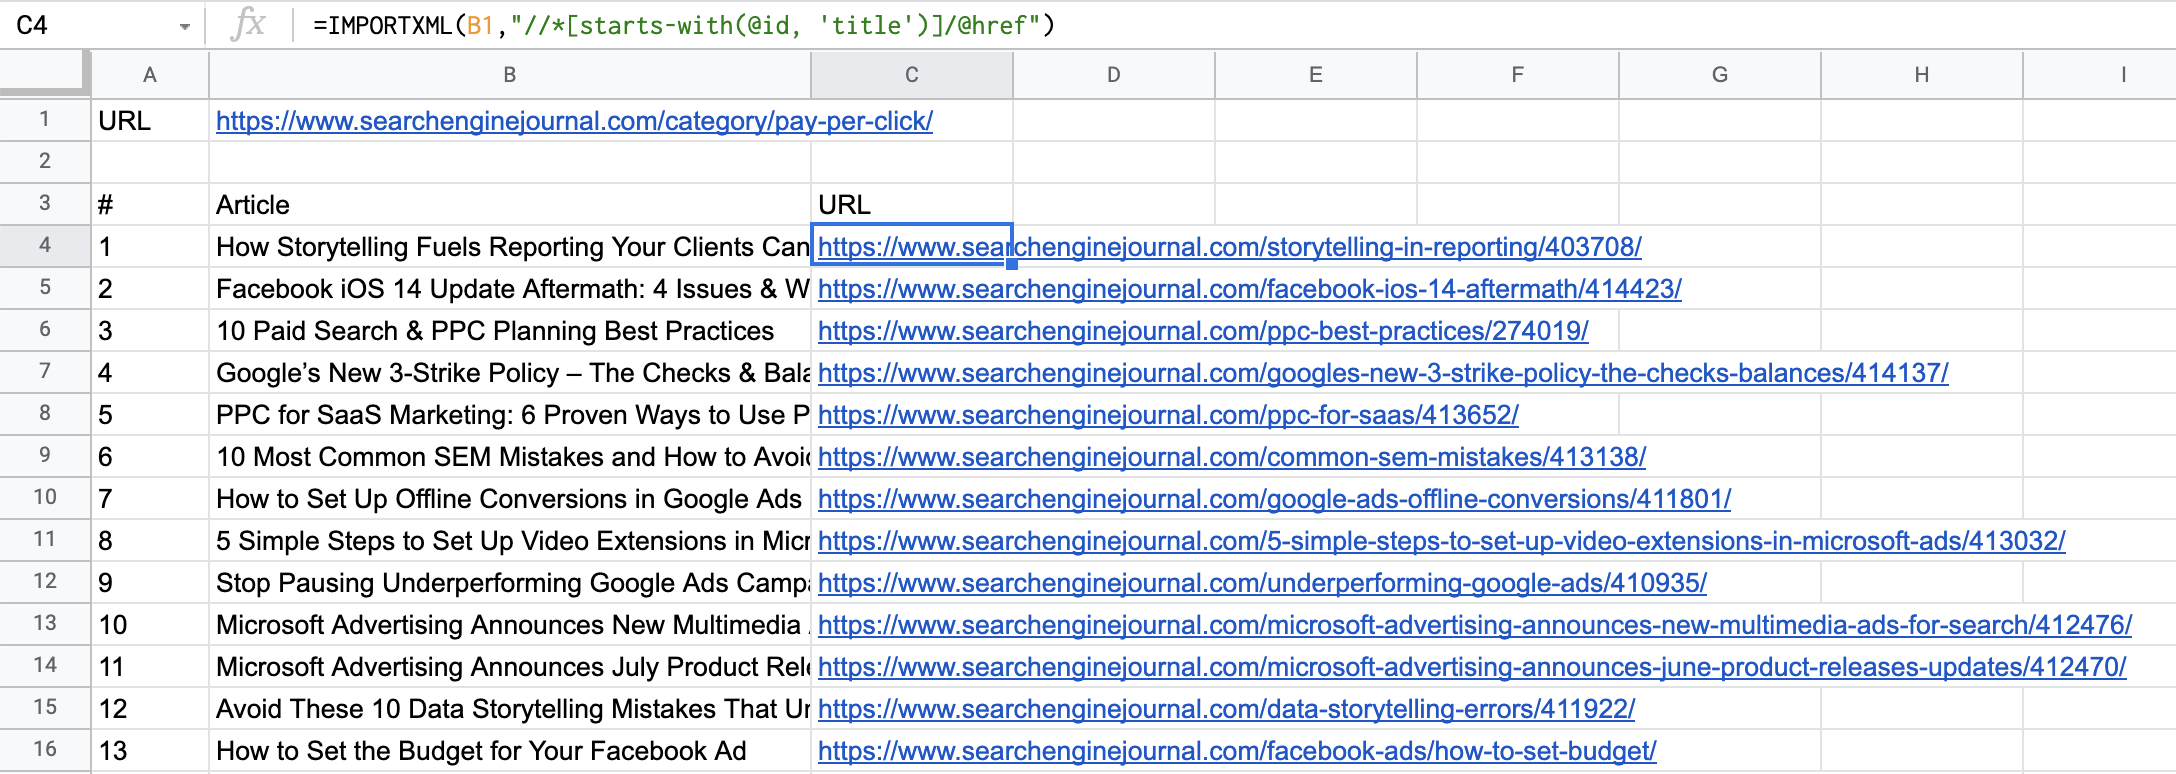 Articles et URL importés dans Google Sheets.